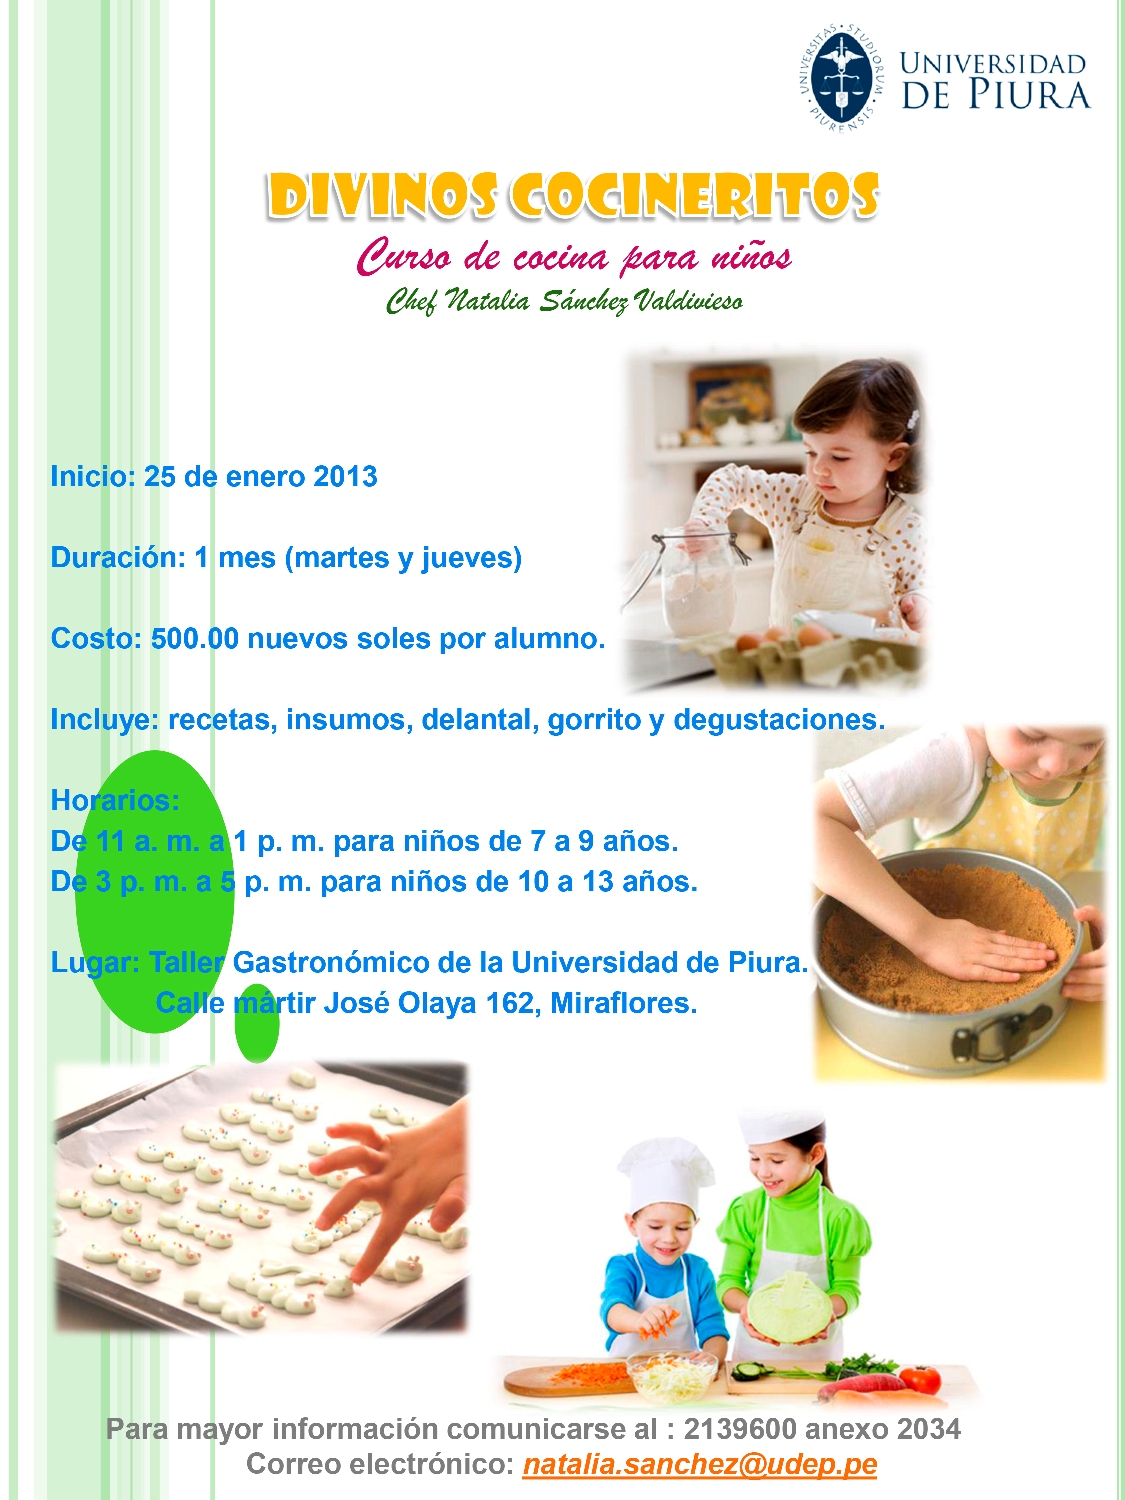 Curso de cocina para niños en la UDEP » UDEP Hoy